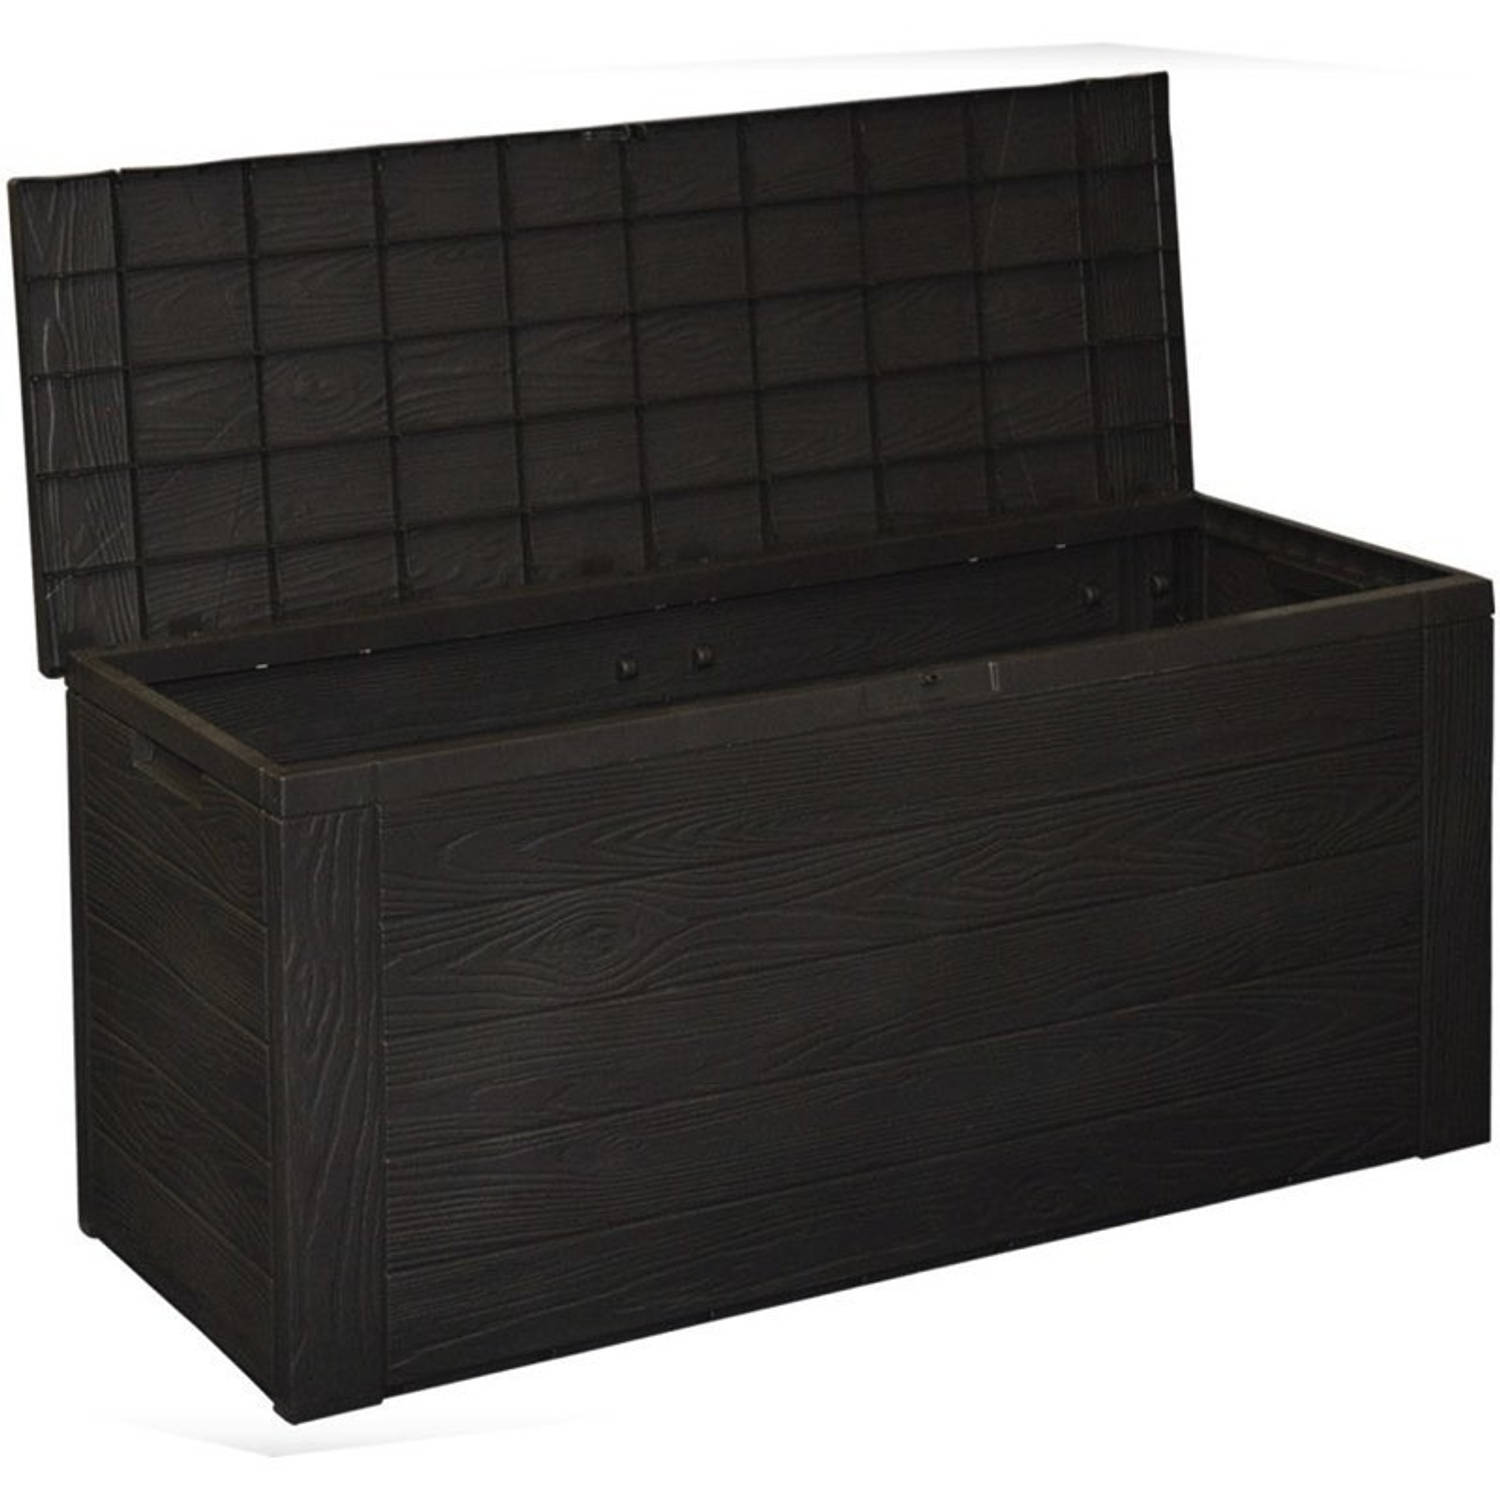 Noordoosten vrouw verlangen Tuin kussen opslag opbergbox hout patroon 120 cm - Kussenboxen | Blokker